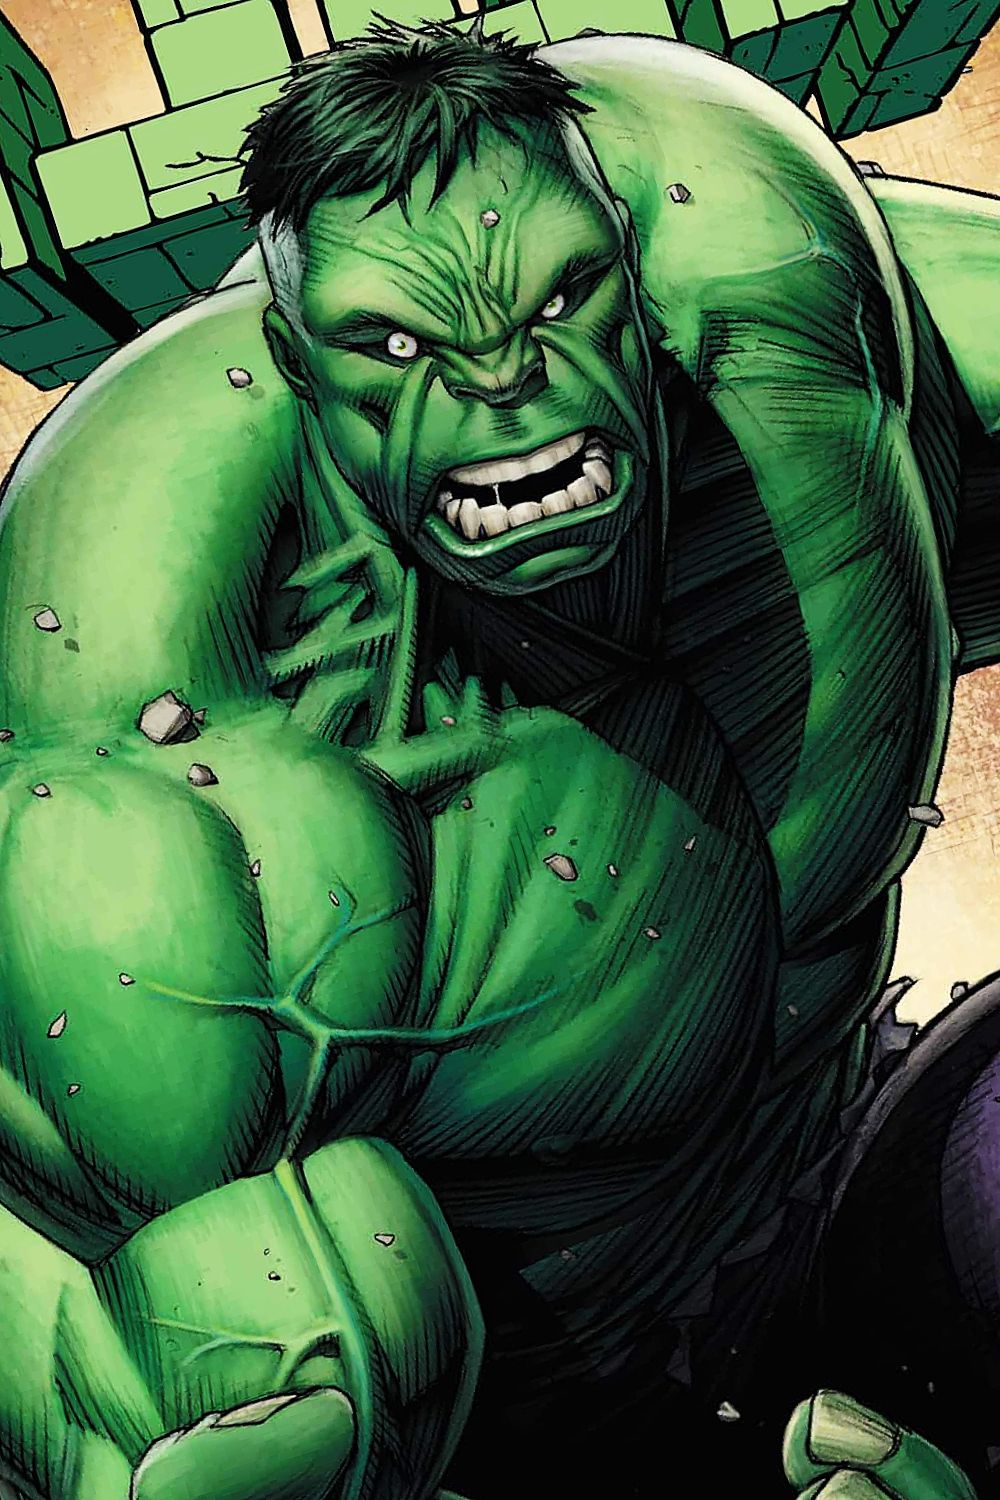 Arte em quadrinhos da última chamada do Incrível Hulk por Dave Keown